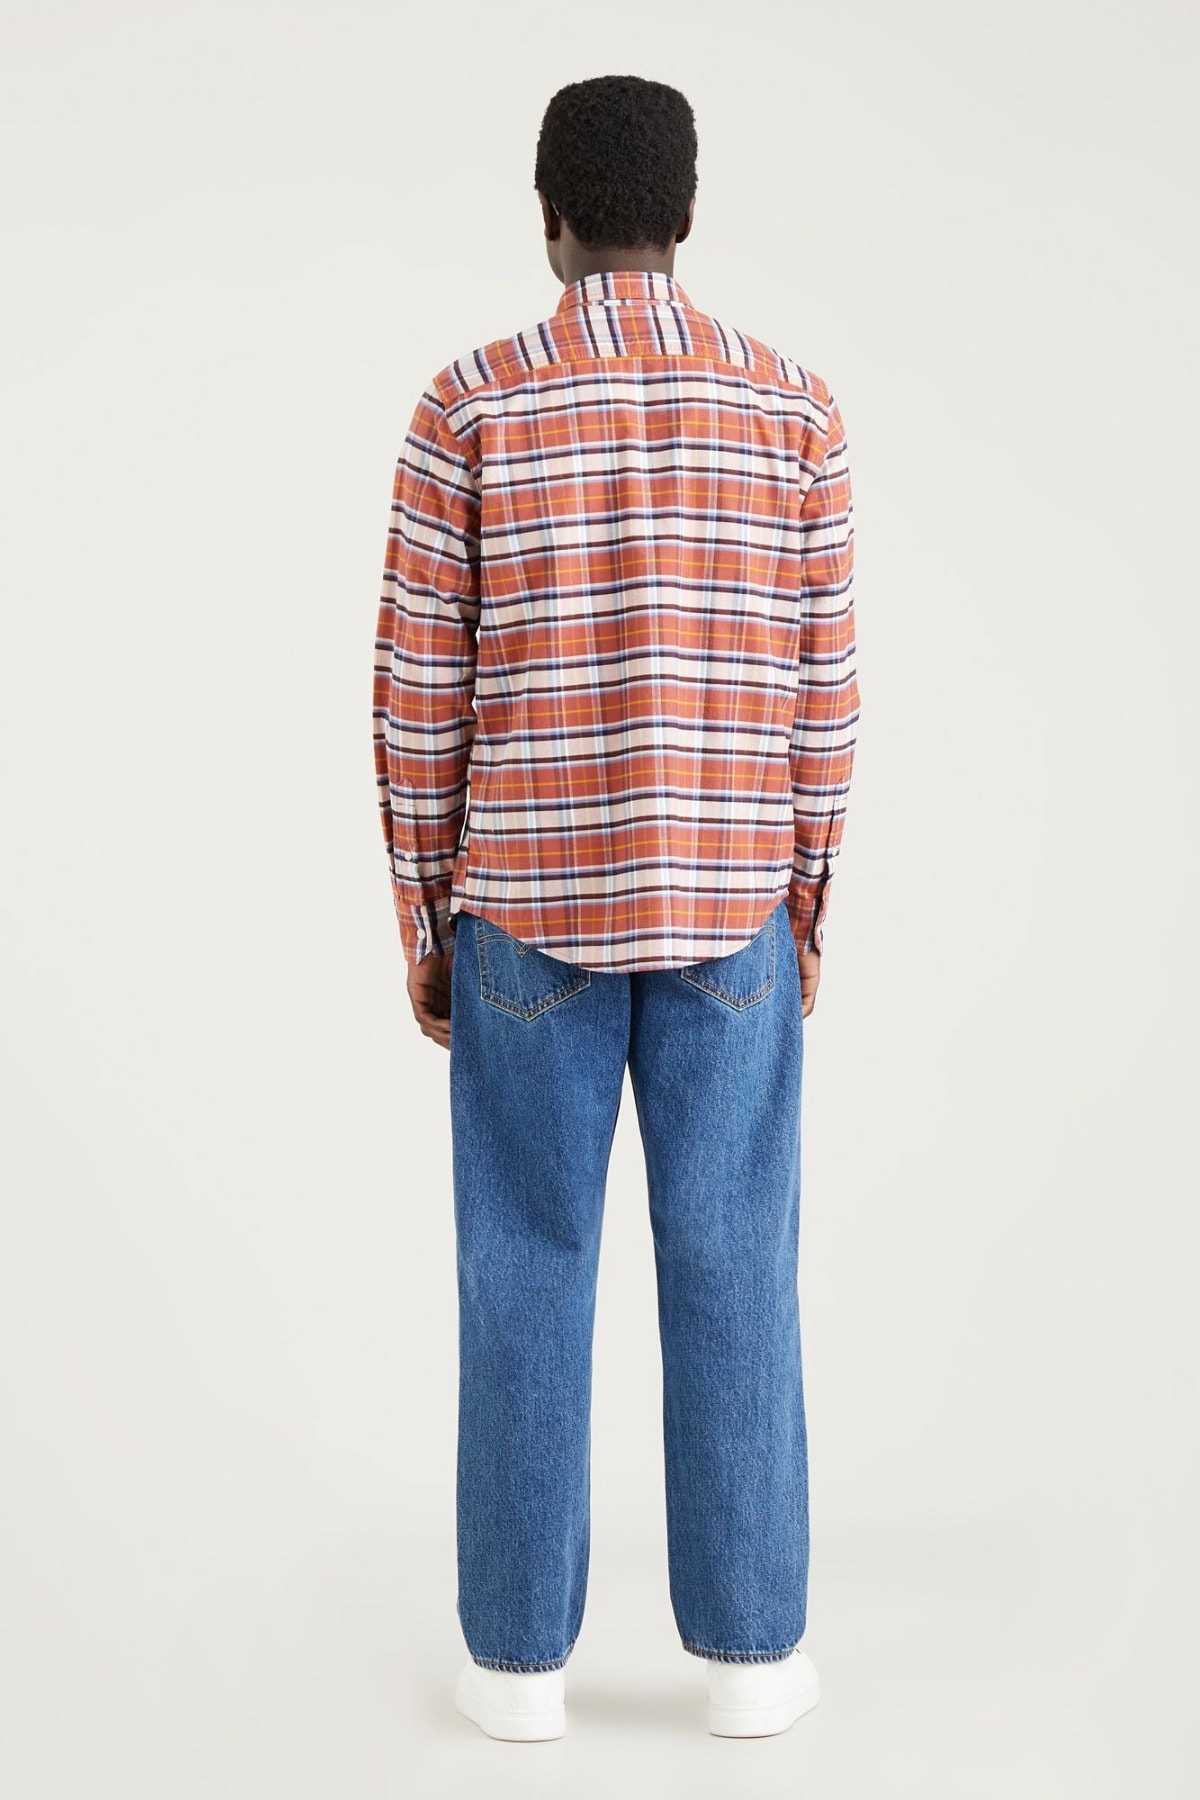 فروش اینترنتی پیراهن مردانه با قیمت شیک Levis کد ty124646074